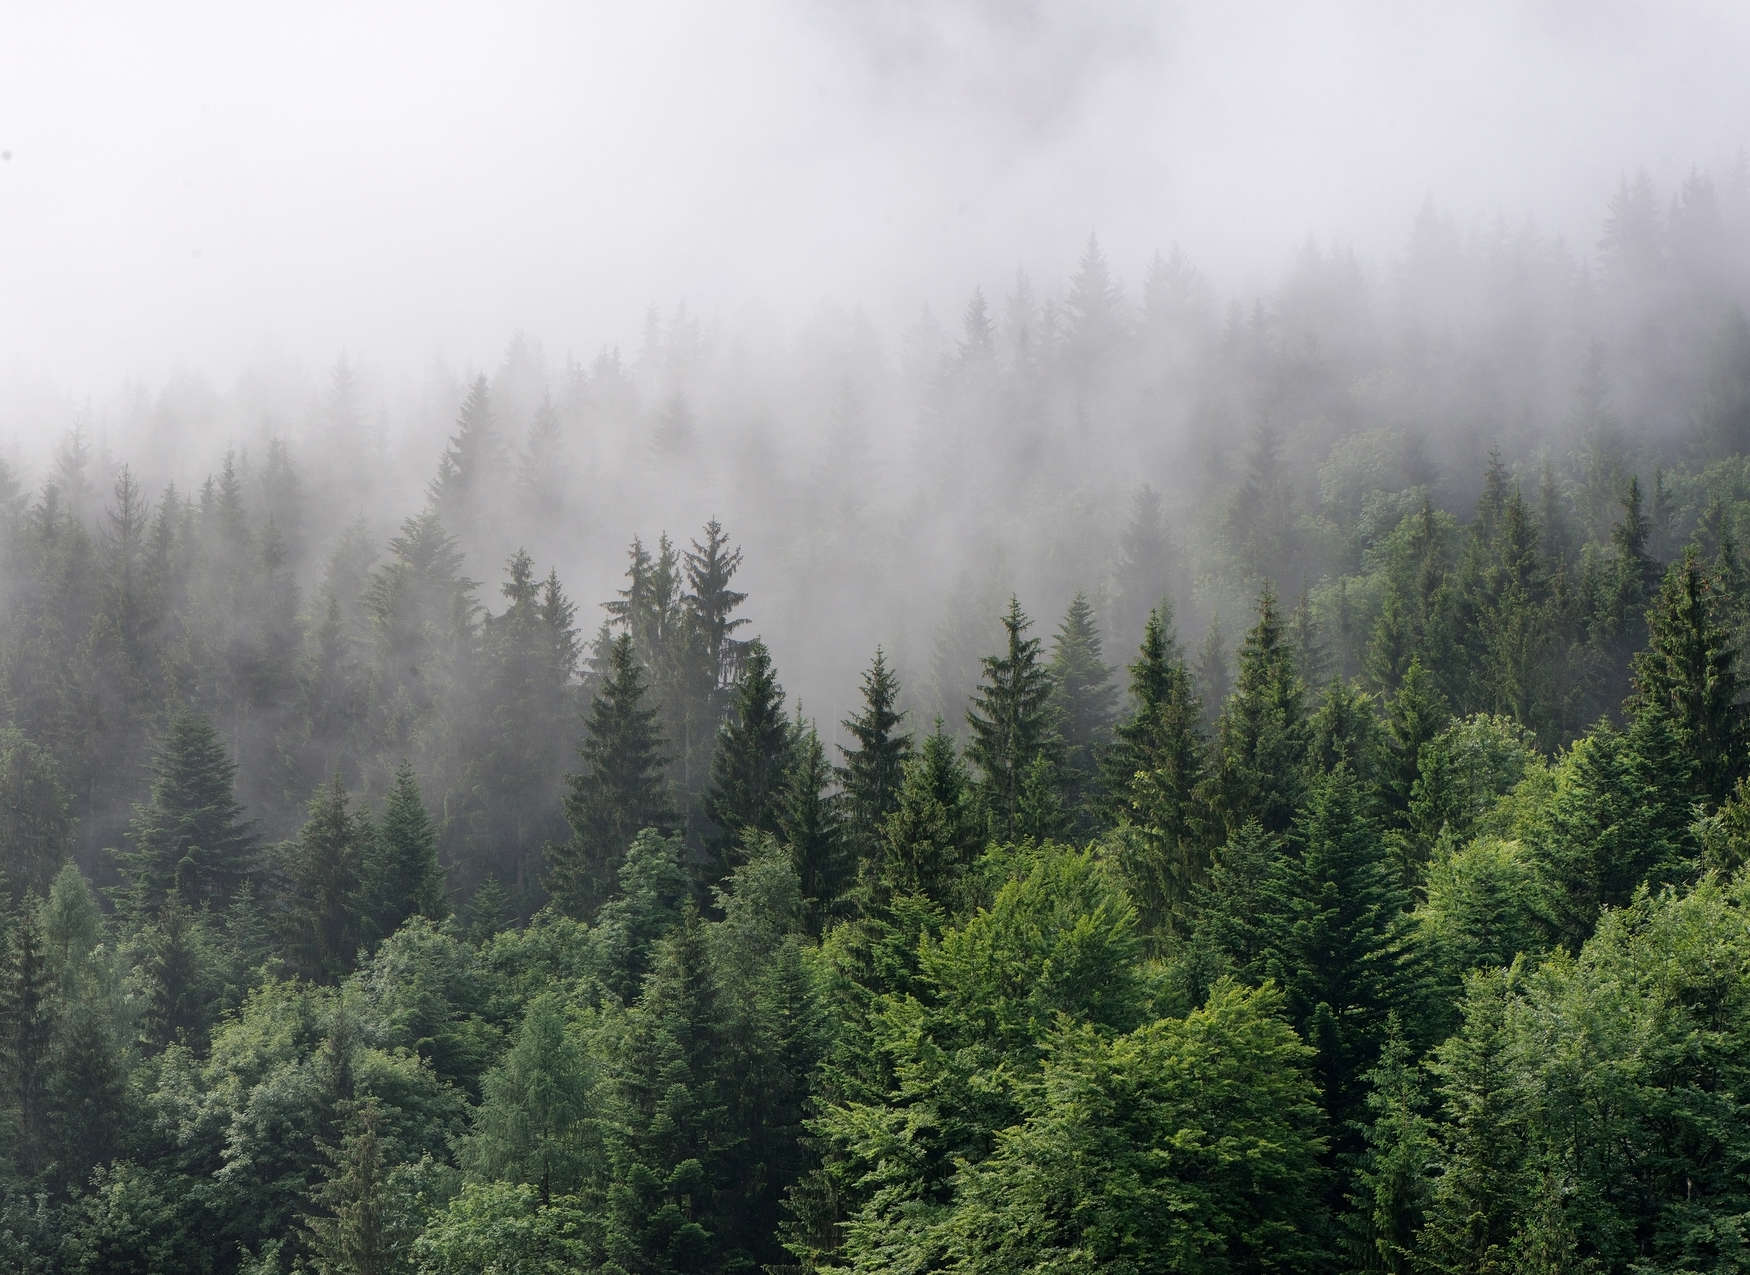             Bosque desde arriba en un día de niebla - Verde, Blanco
        